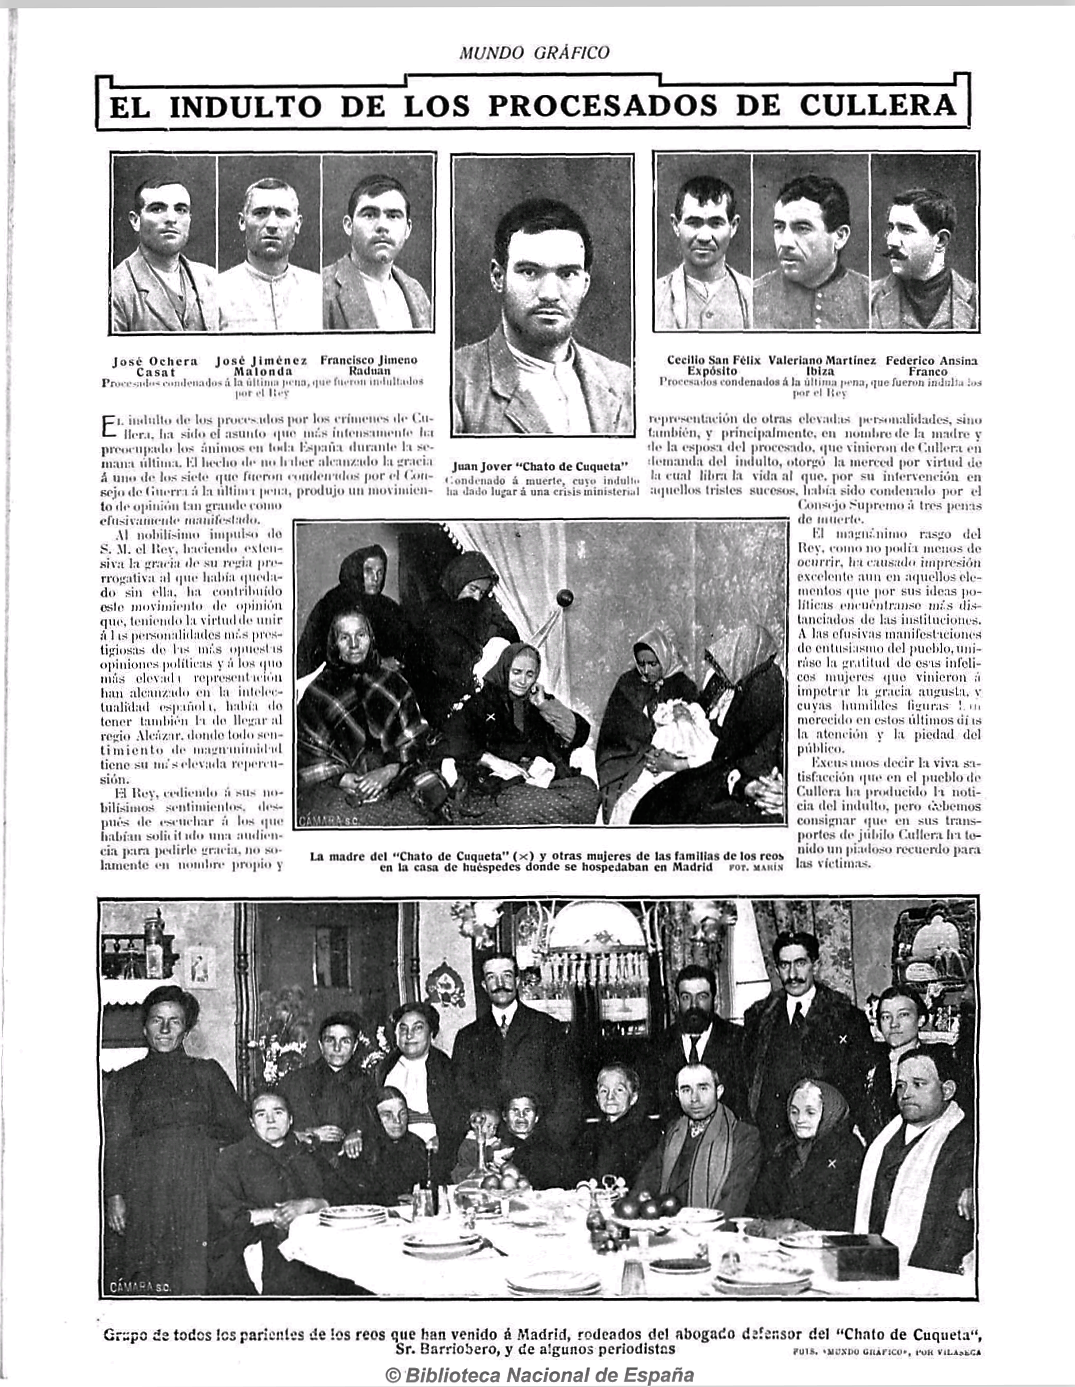 Fotos dos sete acusados nun xornal da época - Mundo Gráfico 17-1-1912 - Biblioteca Dixital Hispánica